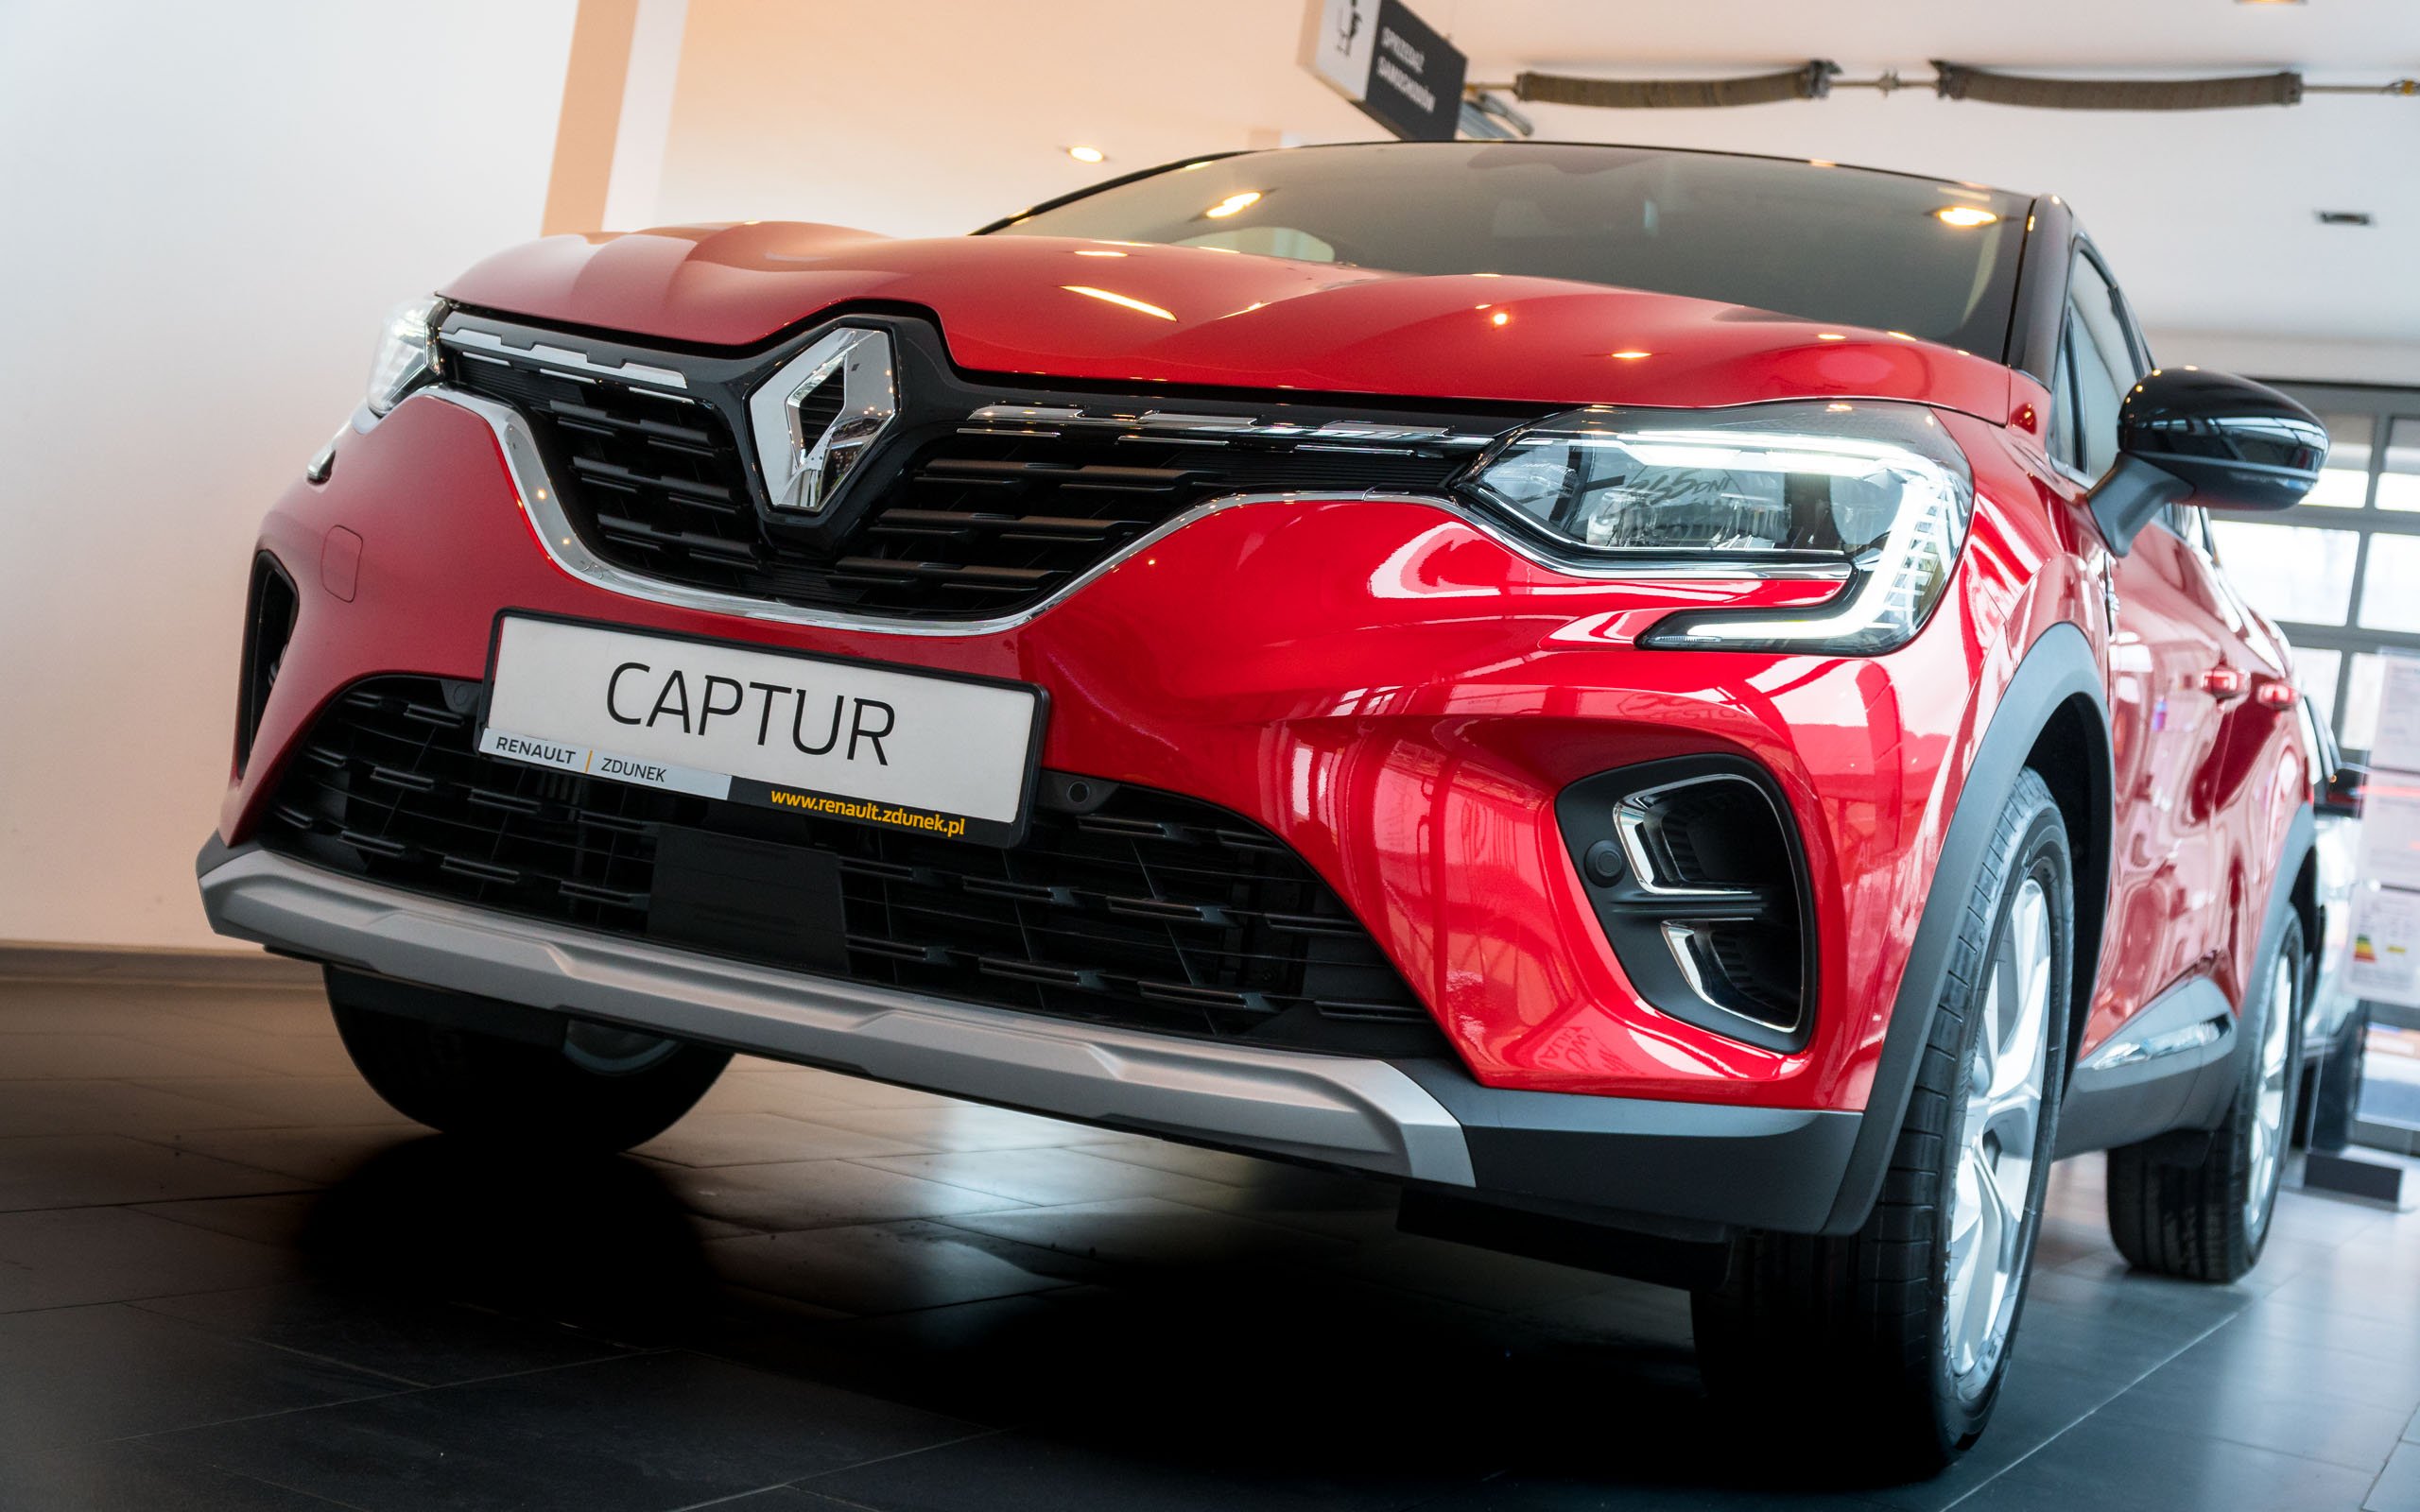 Nowy Renault Captur I Clio Z Instalacją Lpg. Ile Kosztują W Polsce? – Francuskie.pl – Dziennik Motoryzacyjny